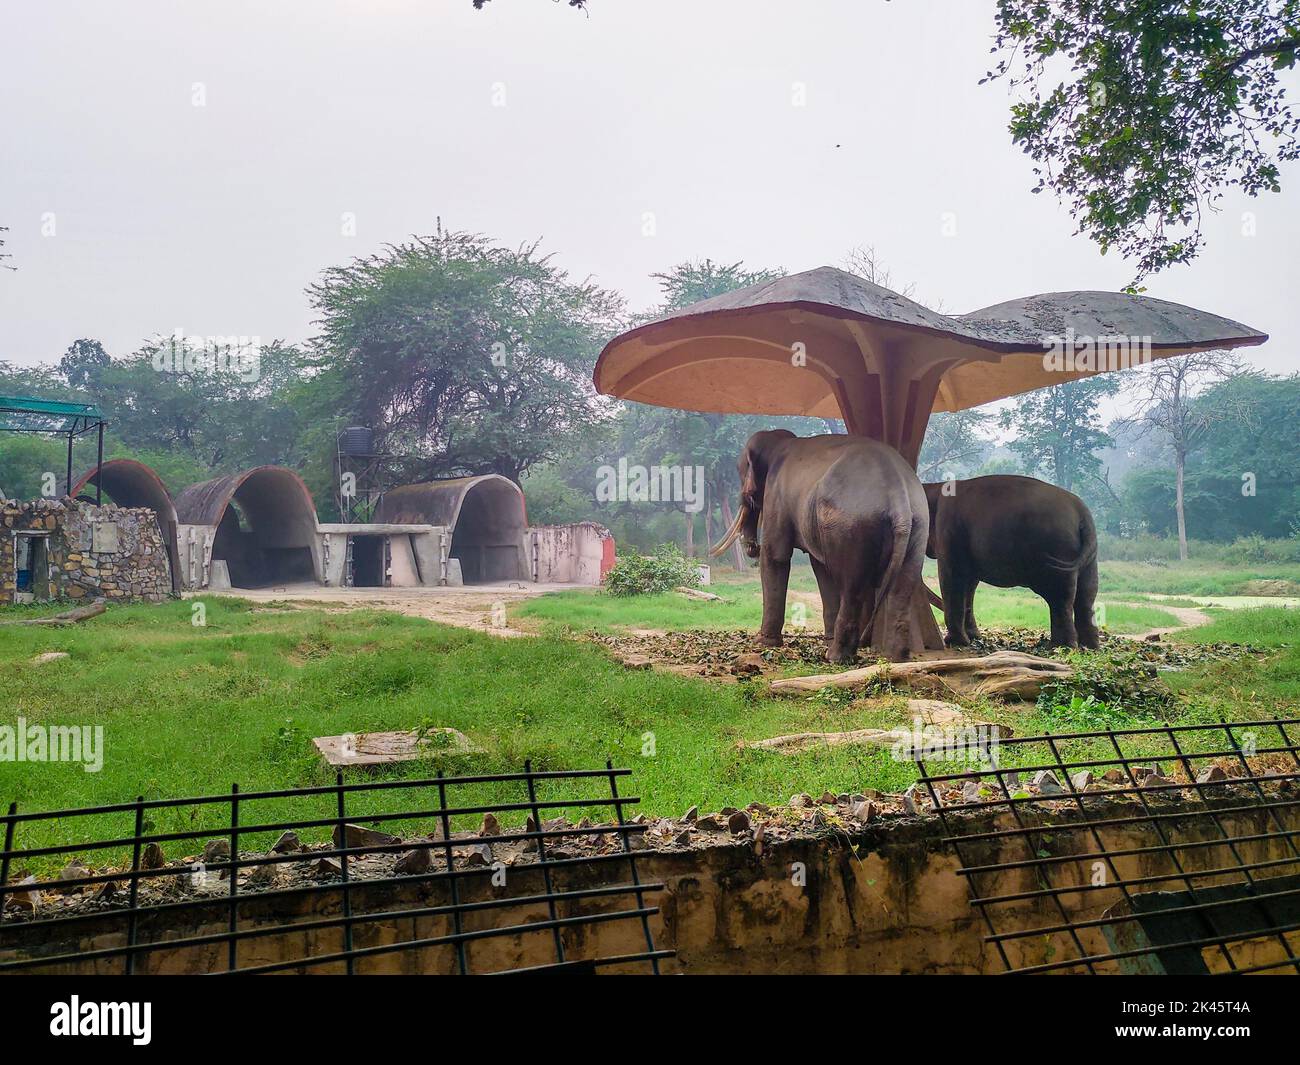 November 2nd 2019. New Delhi India. A pair of Asian Elephants under shade at the Delhi zoo. Stock Photo